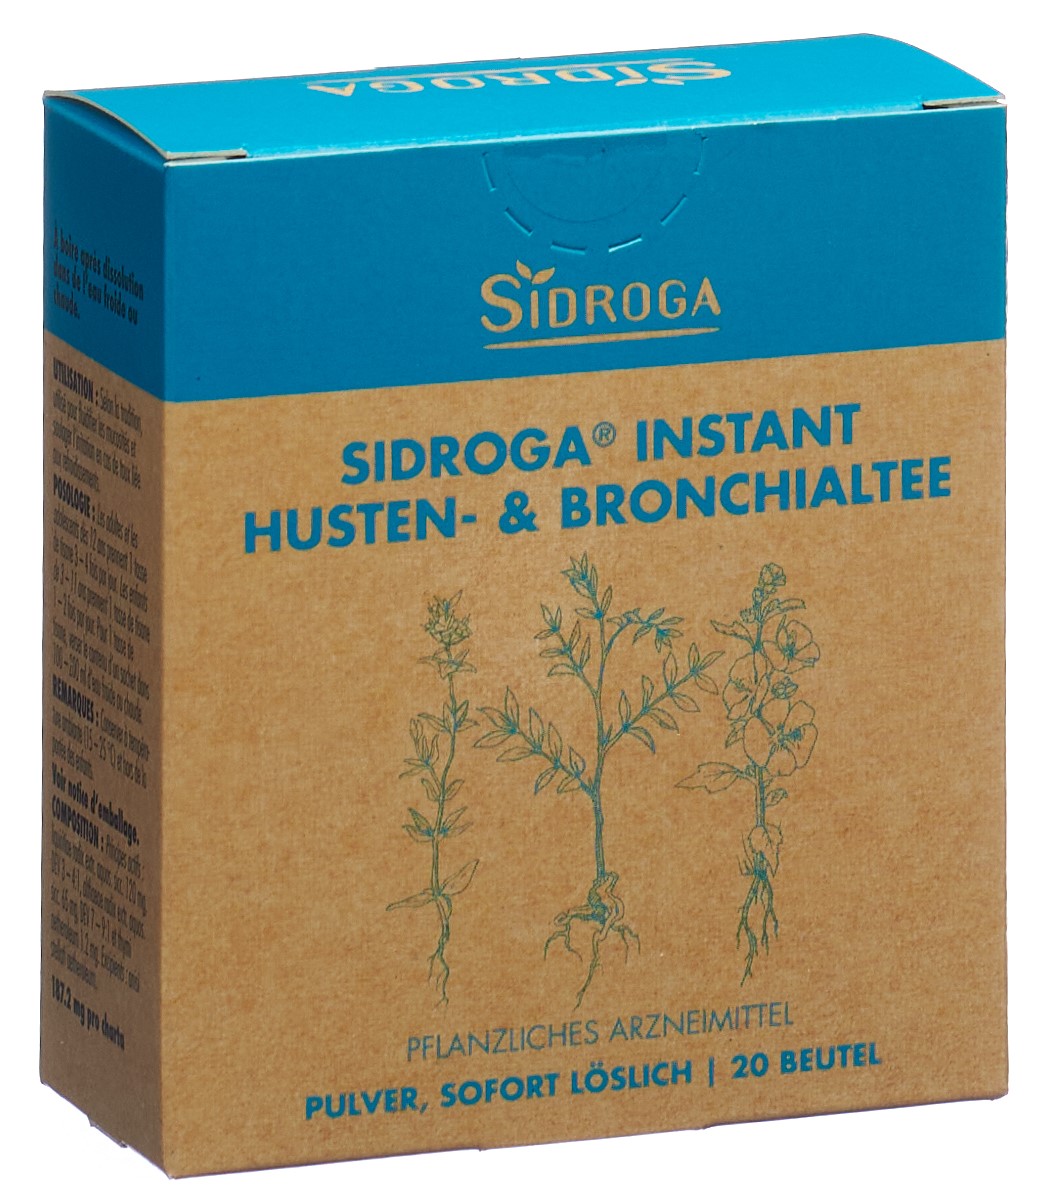 SIDROGA Instant Husten- & Bronchialtee Btl 20 Stk